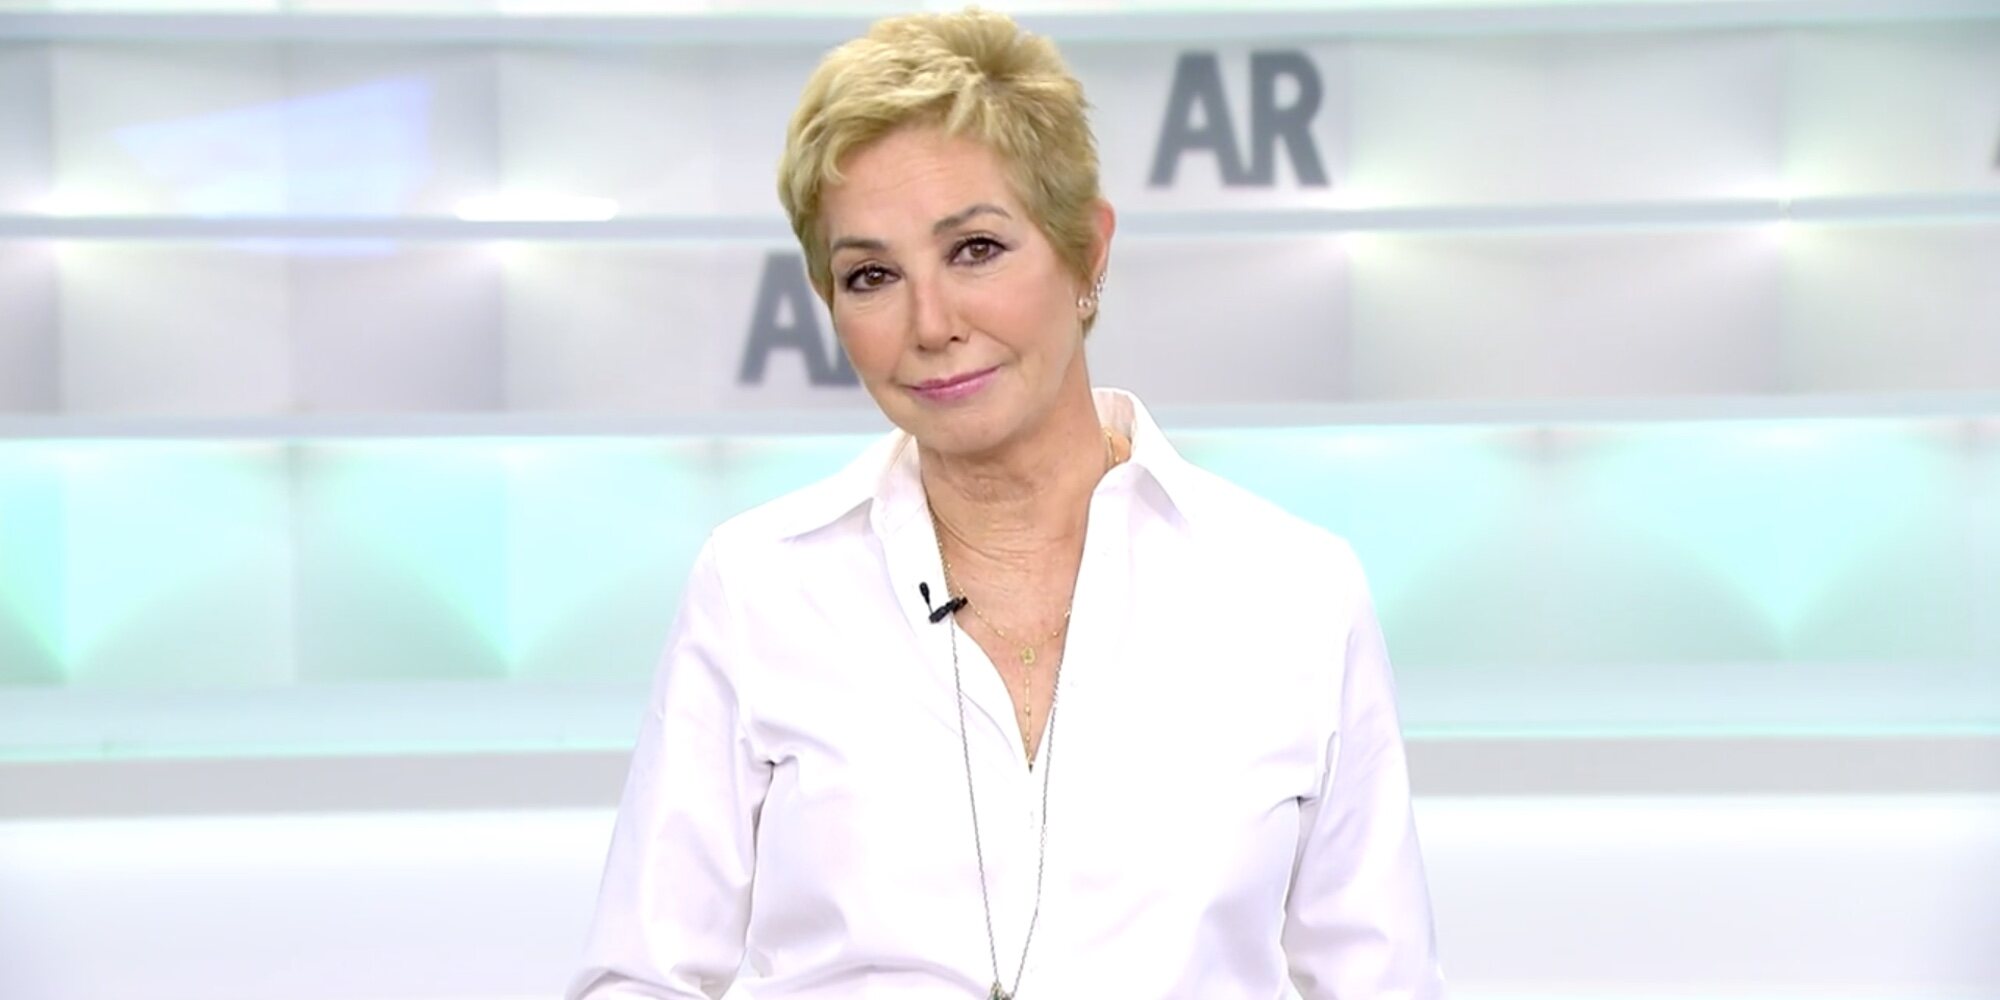 Ana Rosa Quintana regresa a la televisión tras superar el cáncer: "Tengo una deuda eterna con todos ustedes"